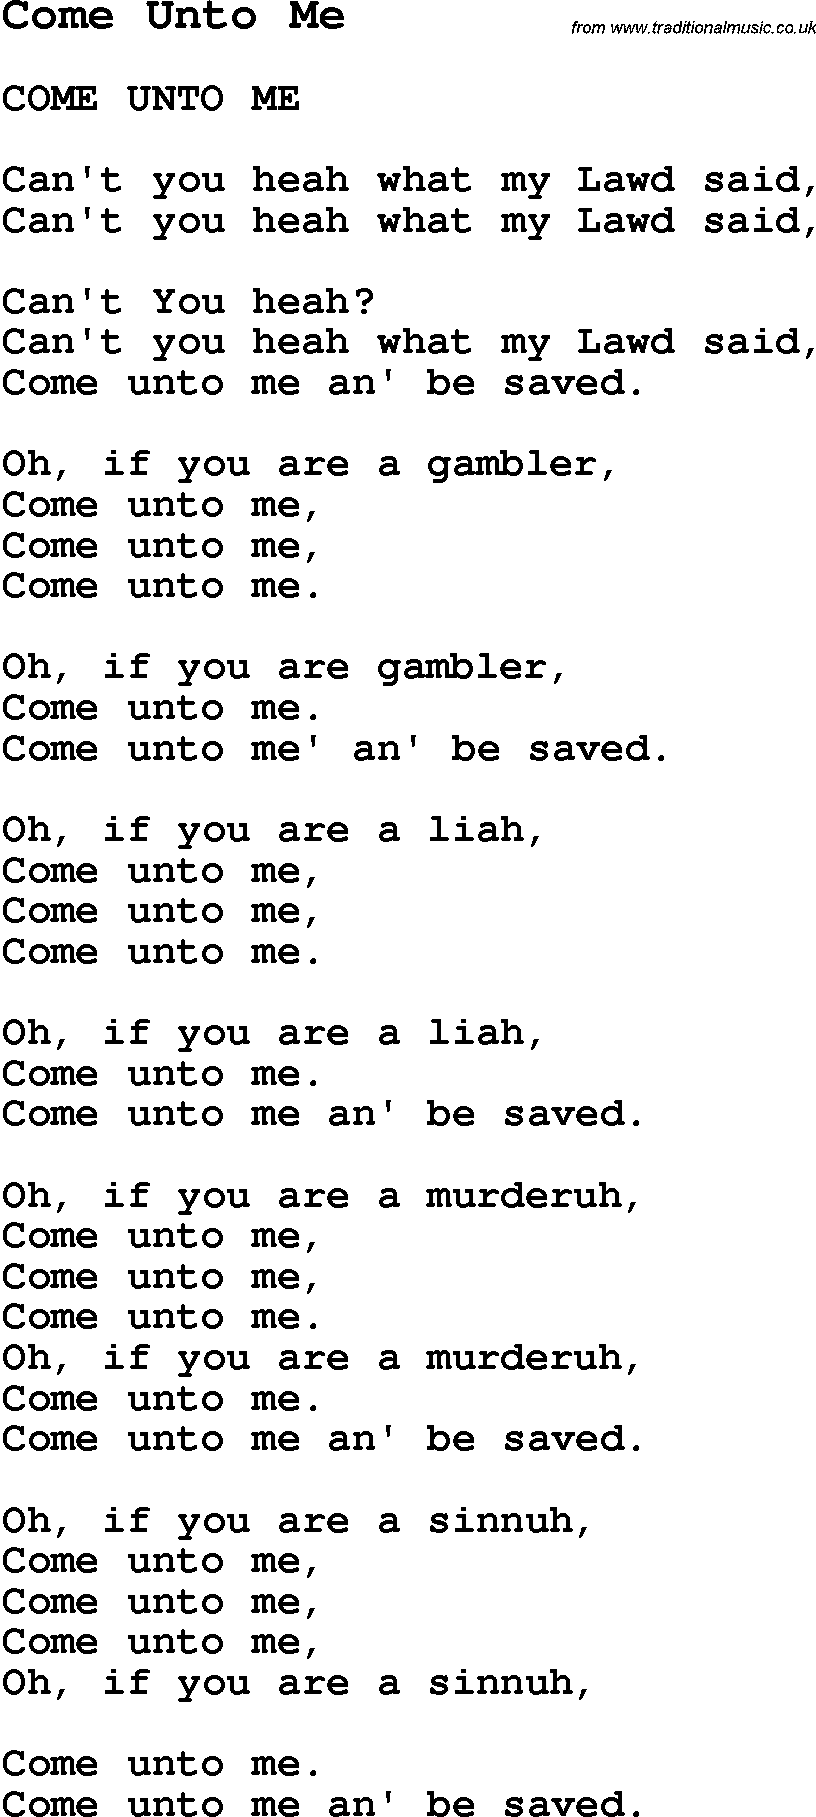 Negro Spiritual Song Lyrics for Come Unto Me